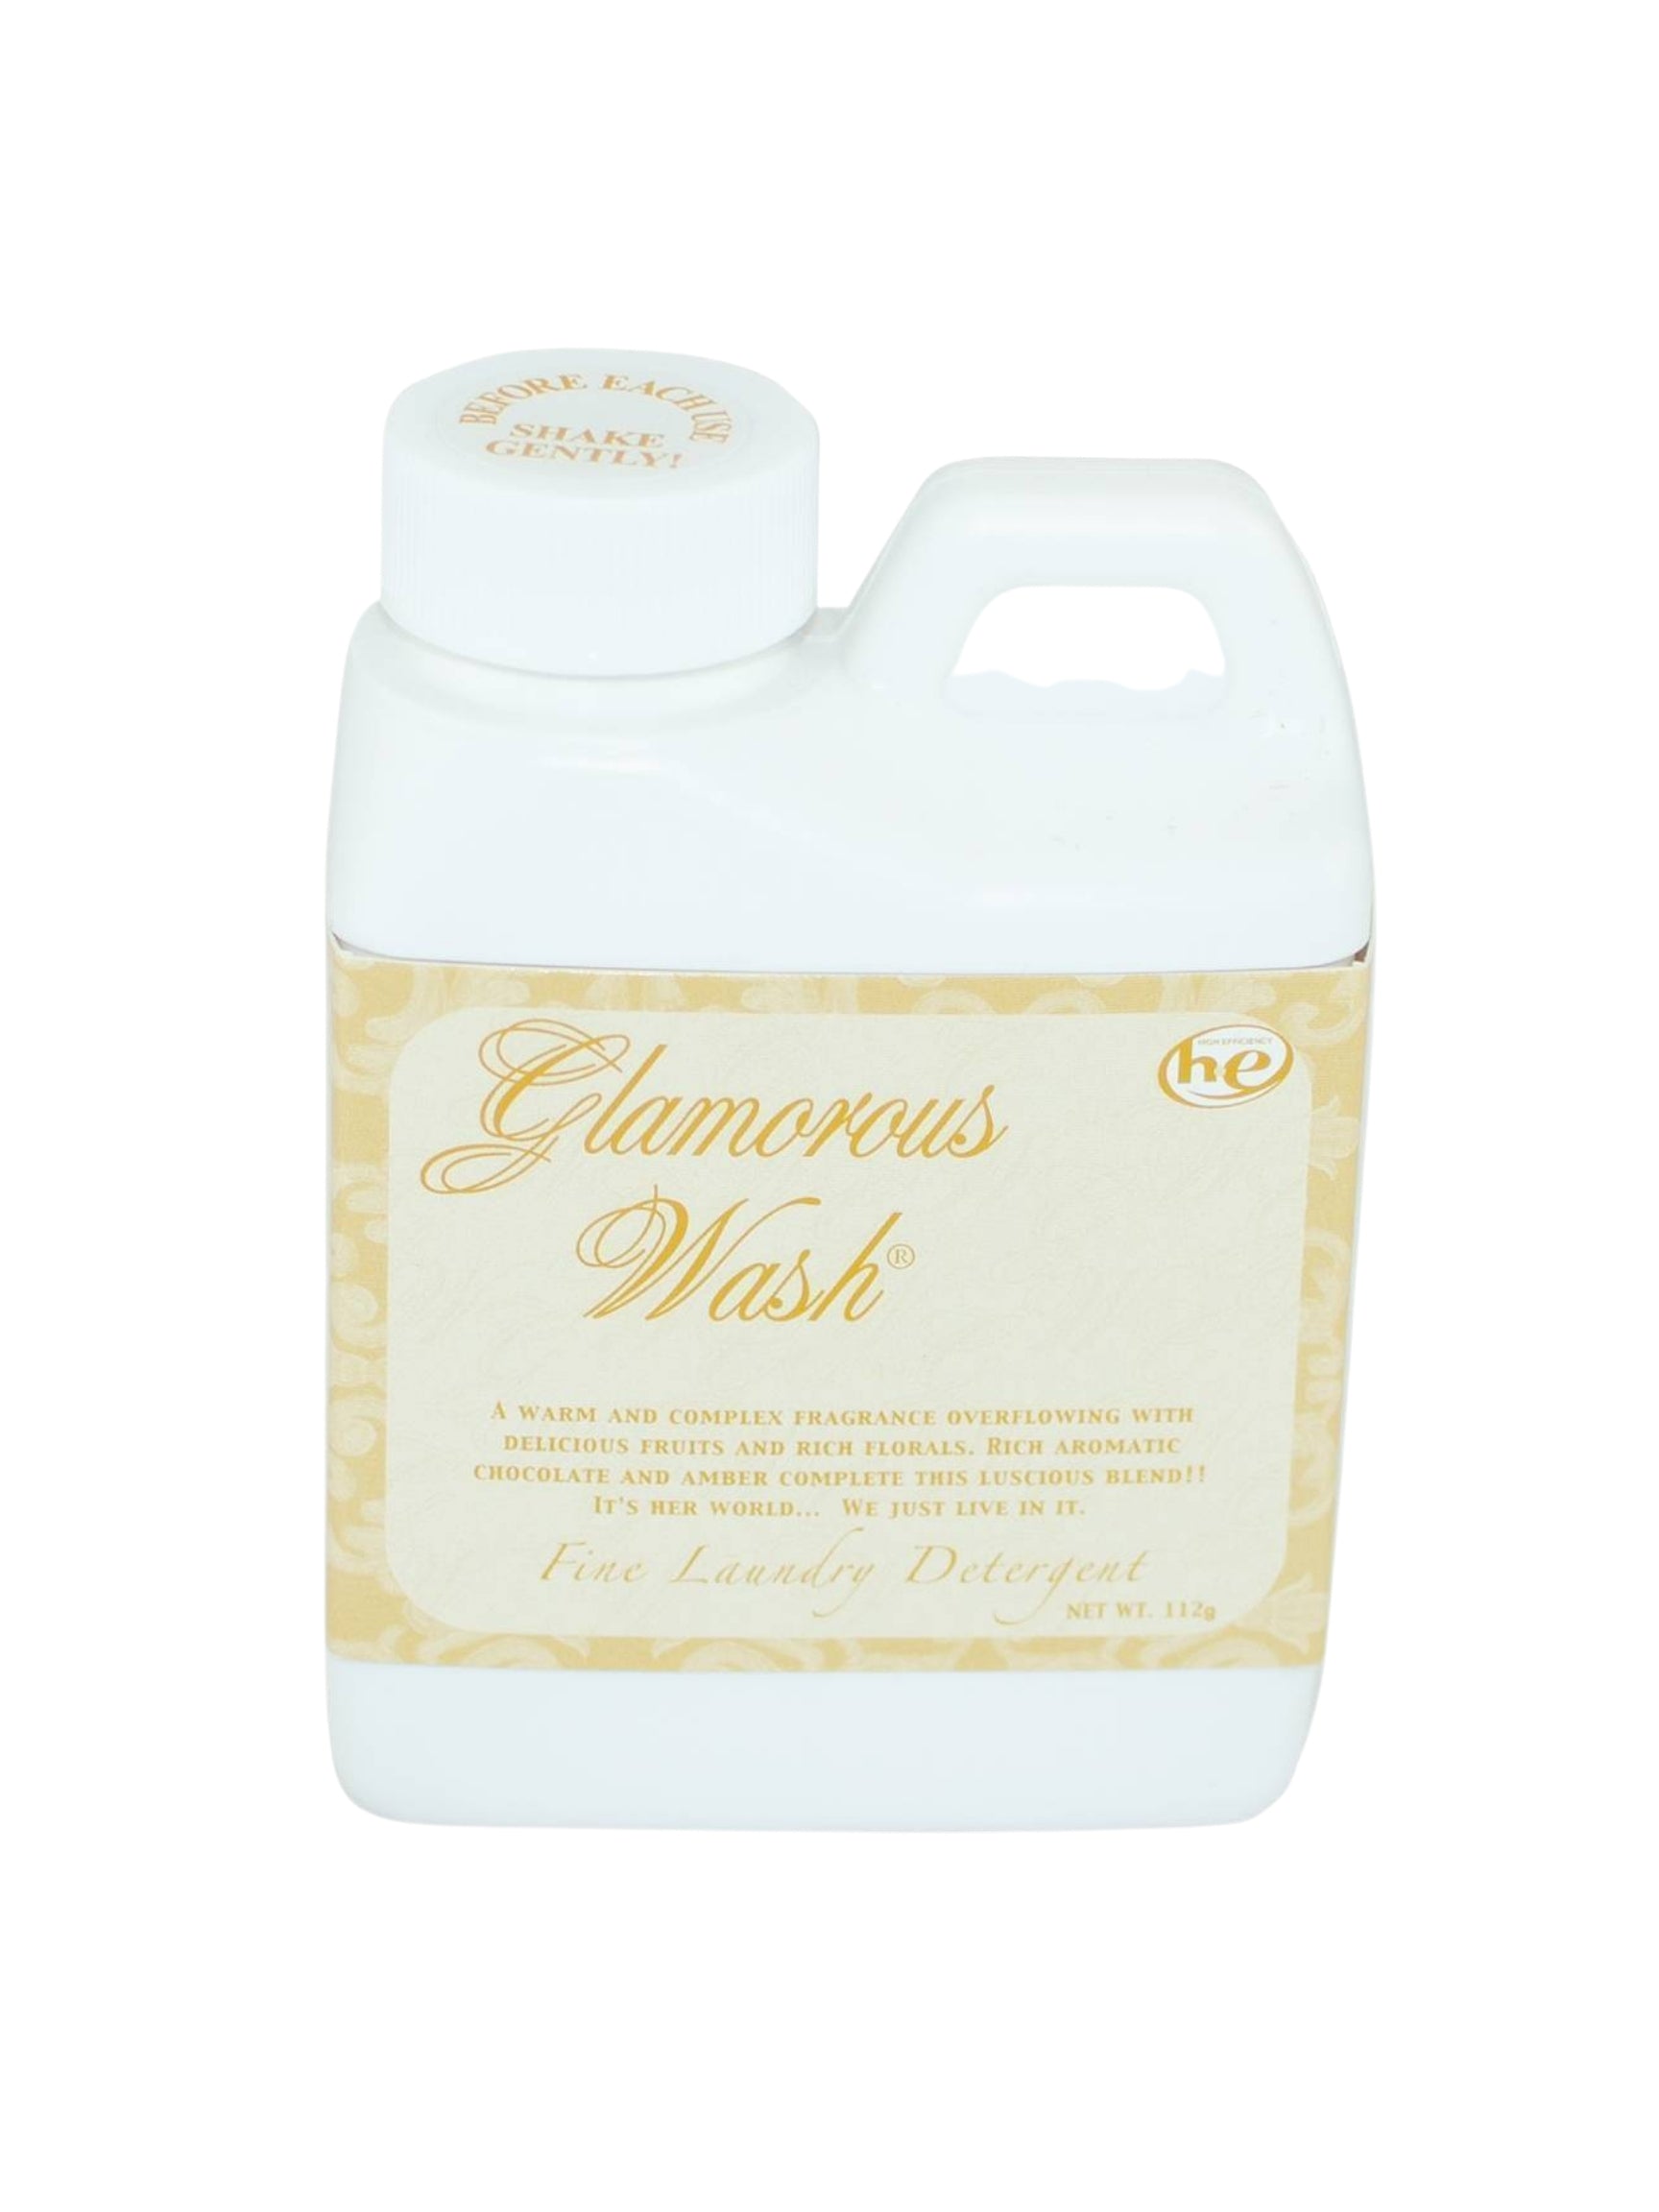 4oz Glamorous Wash Laundry Detergent